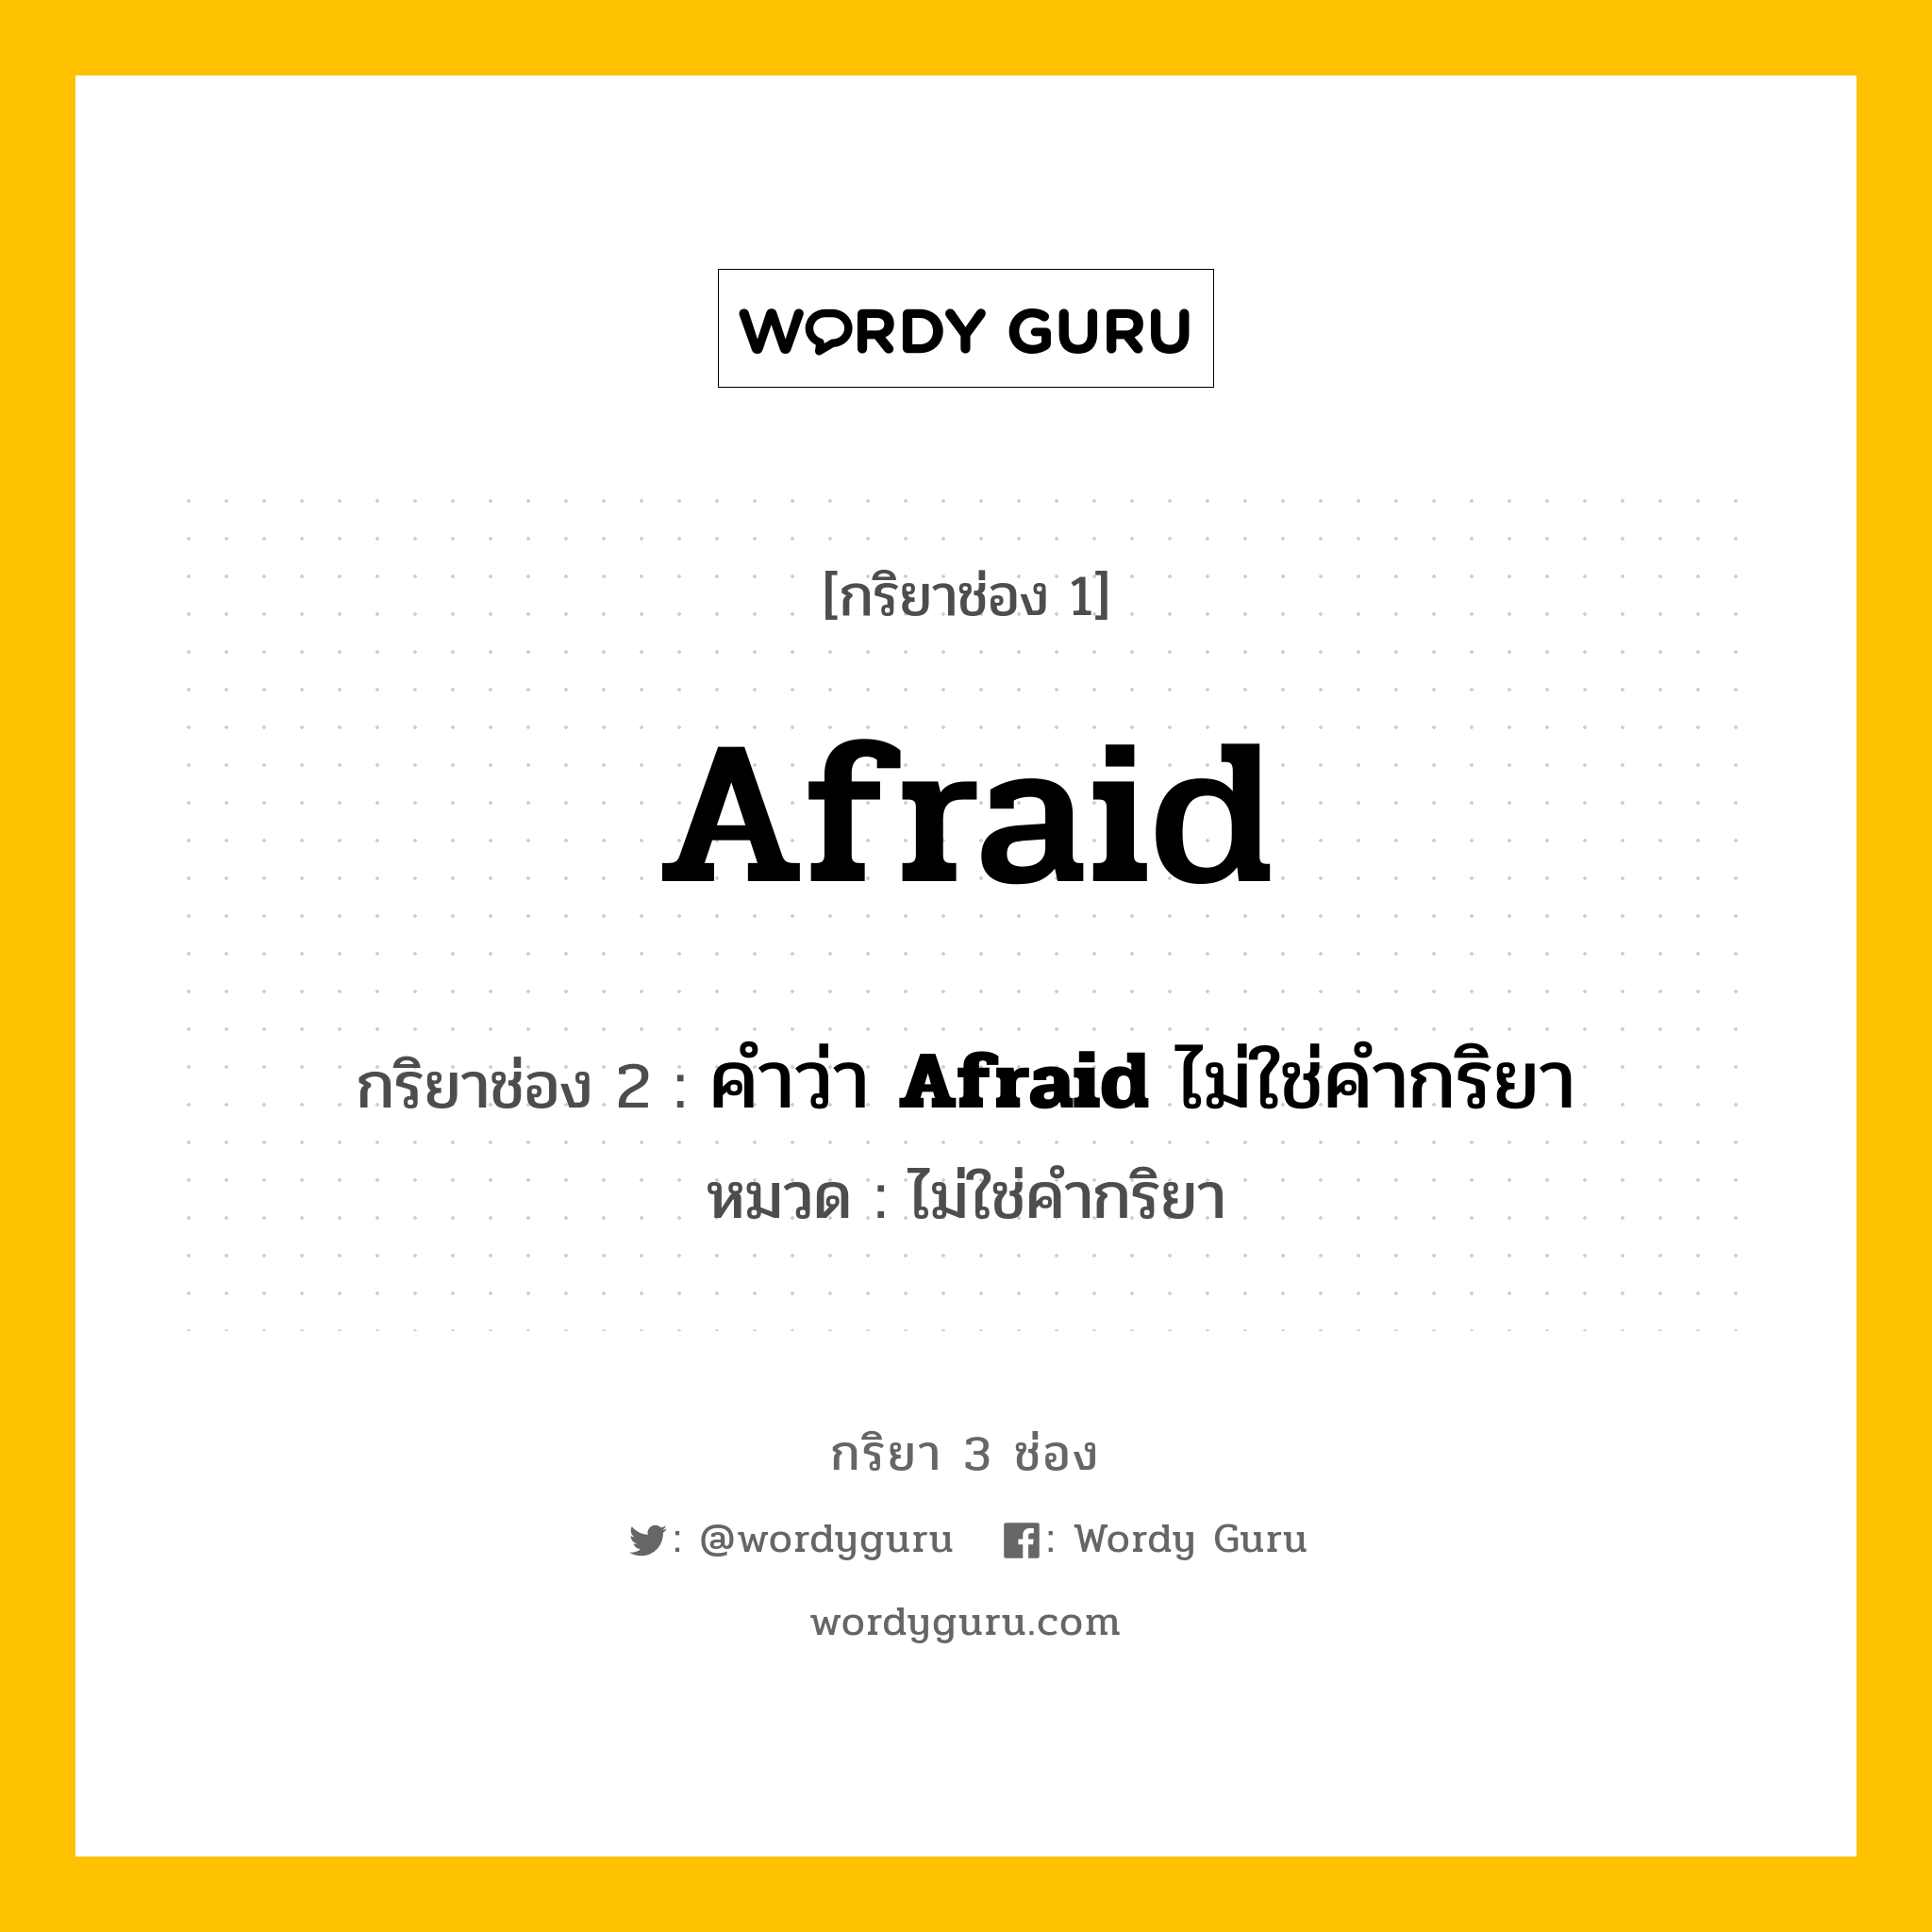 กริยา 3 ช่อง ของ Afraid คืออะไร? มาดูคำอ่าน คำแปลกันเลย, กริยาช่อง 1 Afraid กริยาช่อง 2 คำว่า <b>Afraid</b> ไม่ใช่คำกริยา หมวด ไม่ใช่คำกริยา หมวด ไม่ใช่คำกริยา